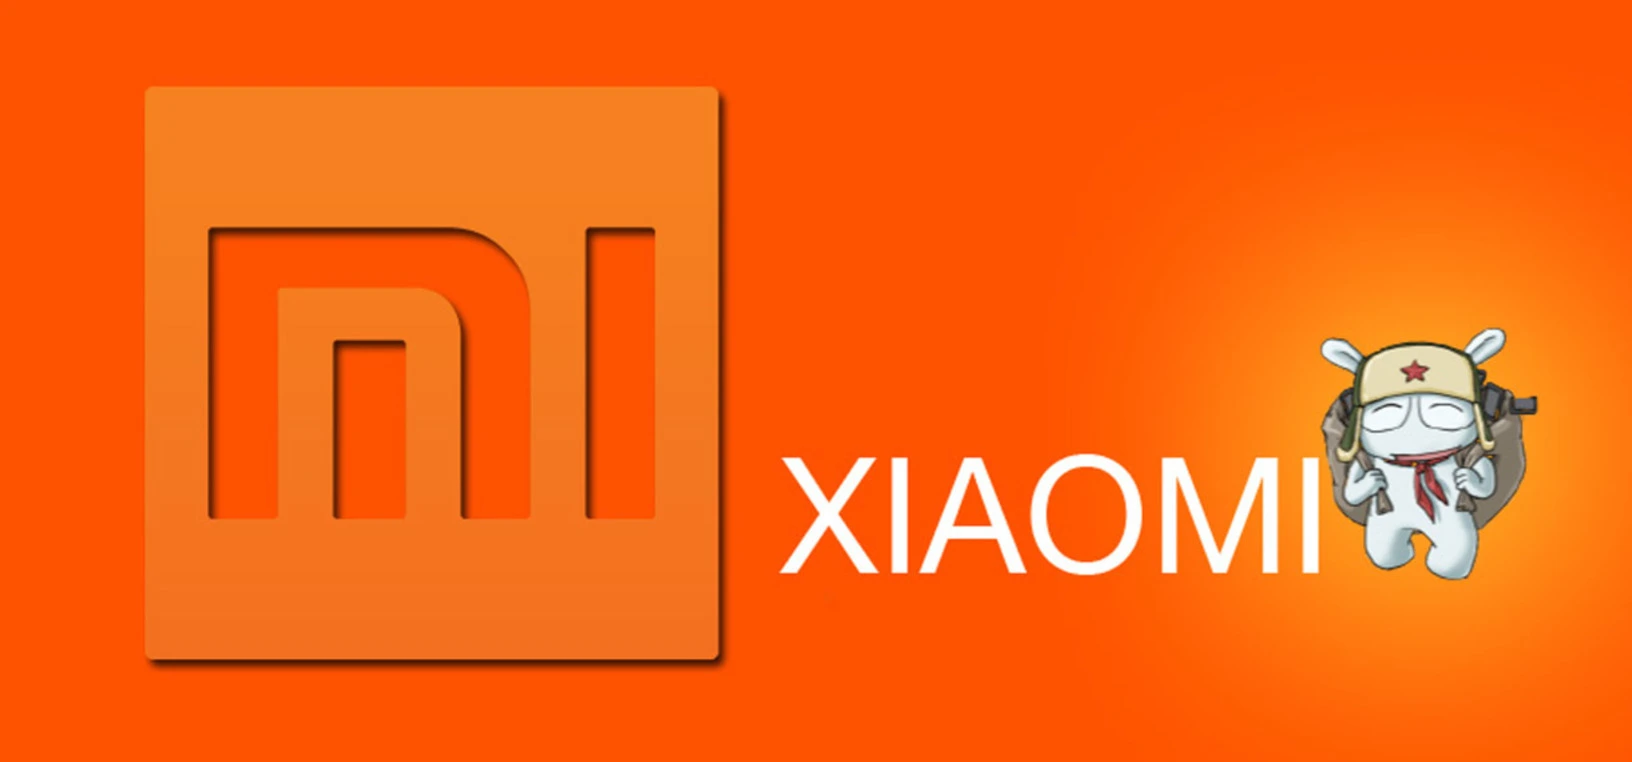 Ярлык сяоми. Xiaomi эмблема. Новый логотип Xiaomi. Старый логотип Сяоми. Xiaomi вывеска.